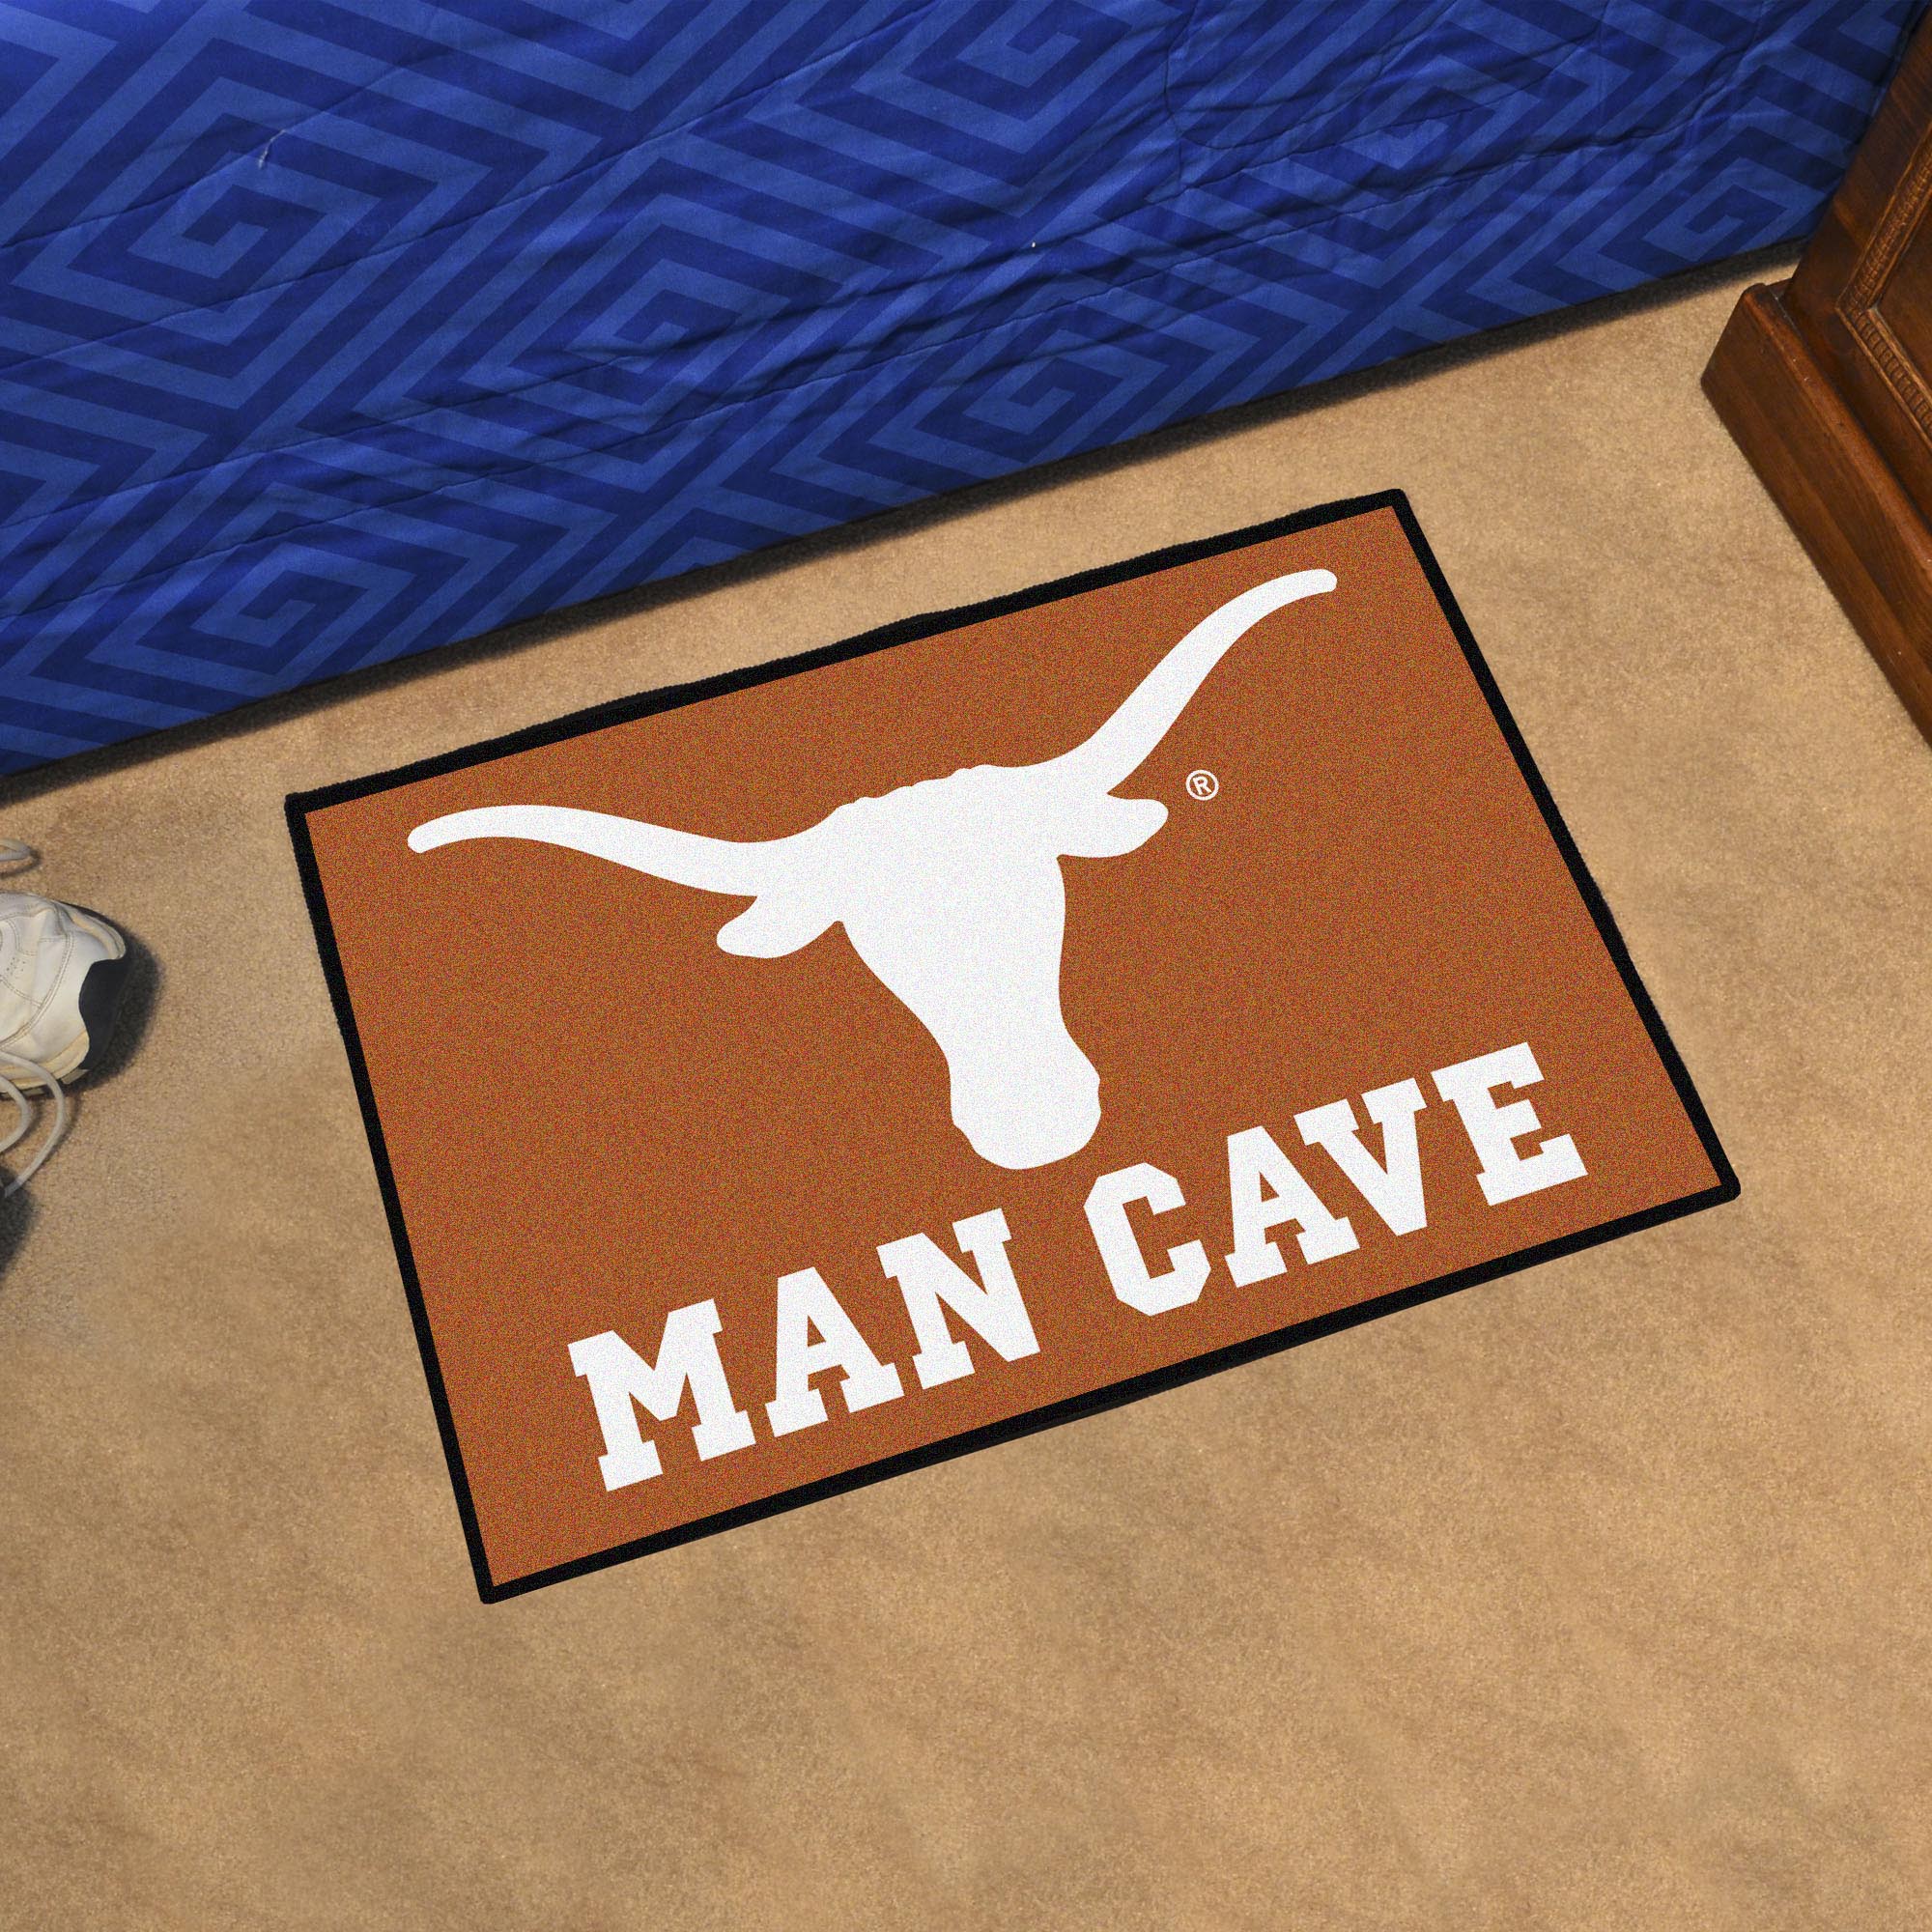 Univ. Of Texas Longhornstarter Man Cave Mat Floor Mat